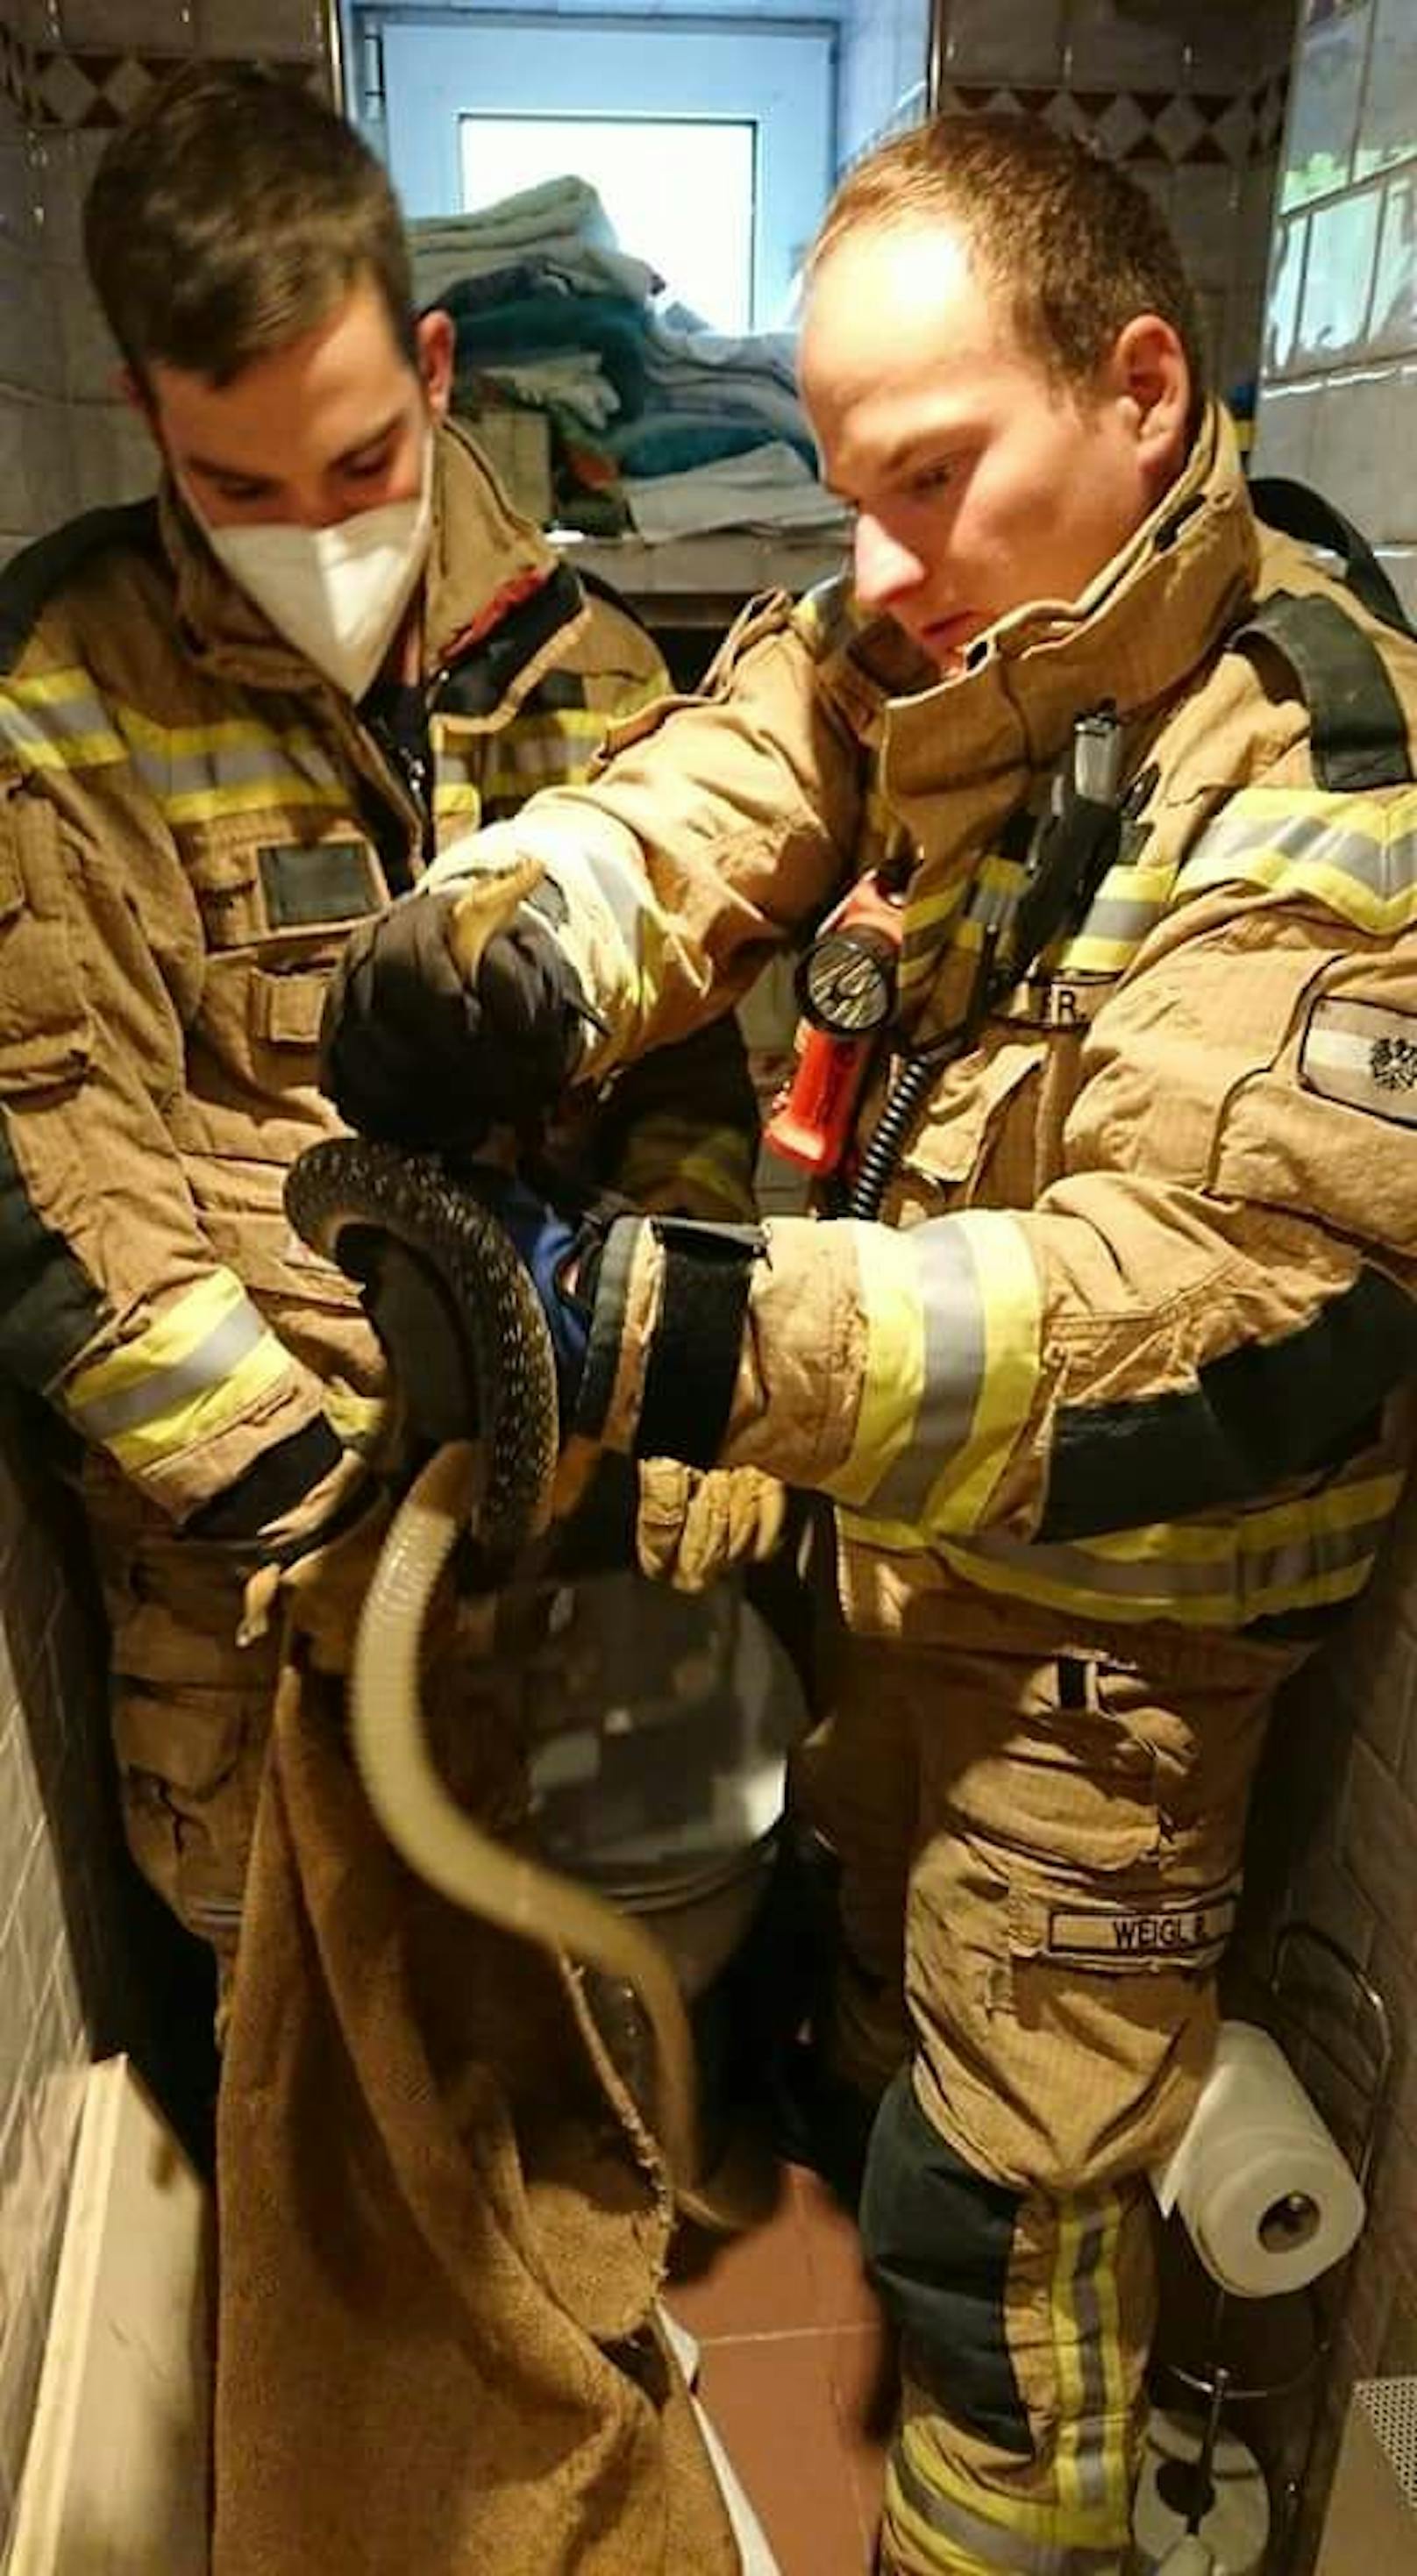 Schlange steckte in WC-Spülkasten: Die Feuerwehr half.